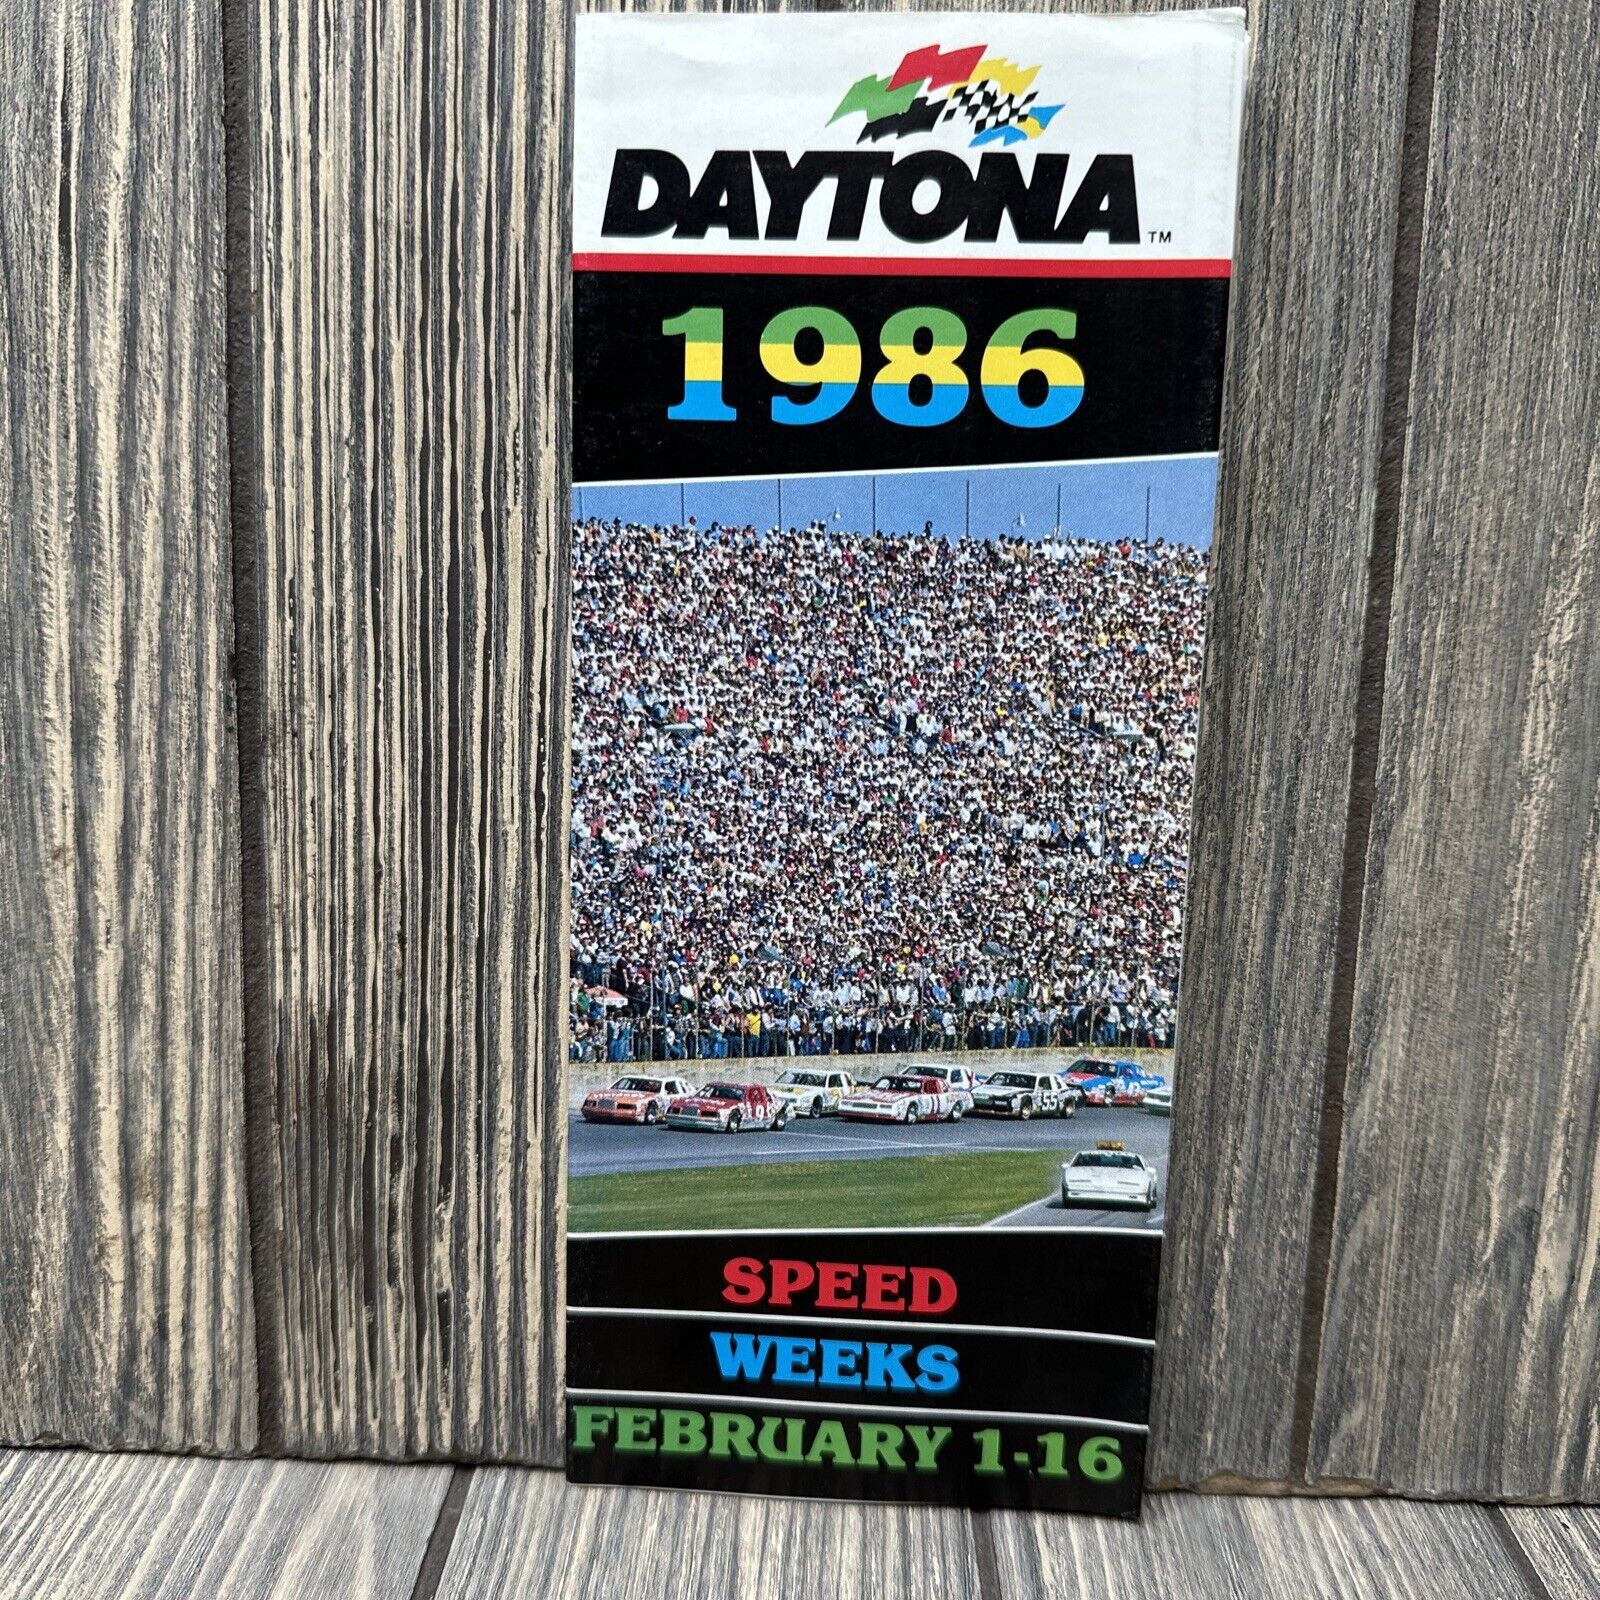 Vintage Daytona 1986 Speed Weeks February 1-16 Brochure